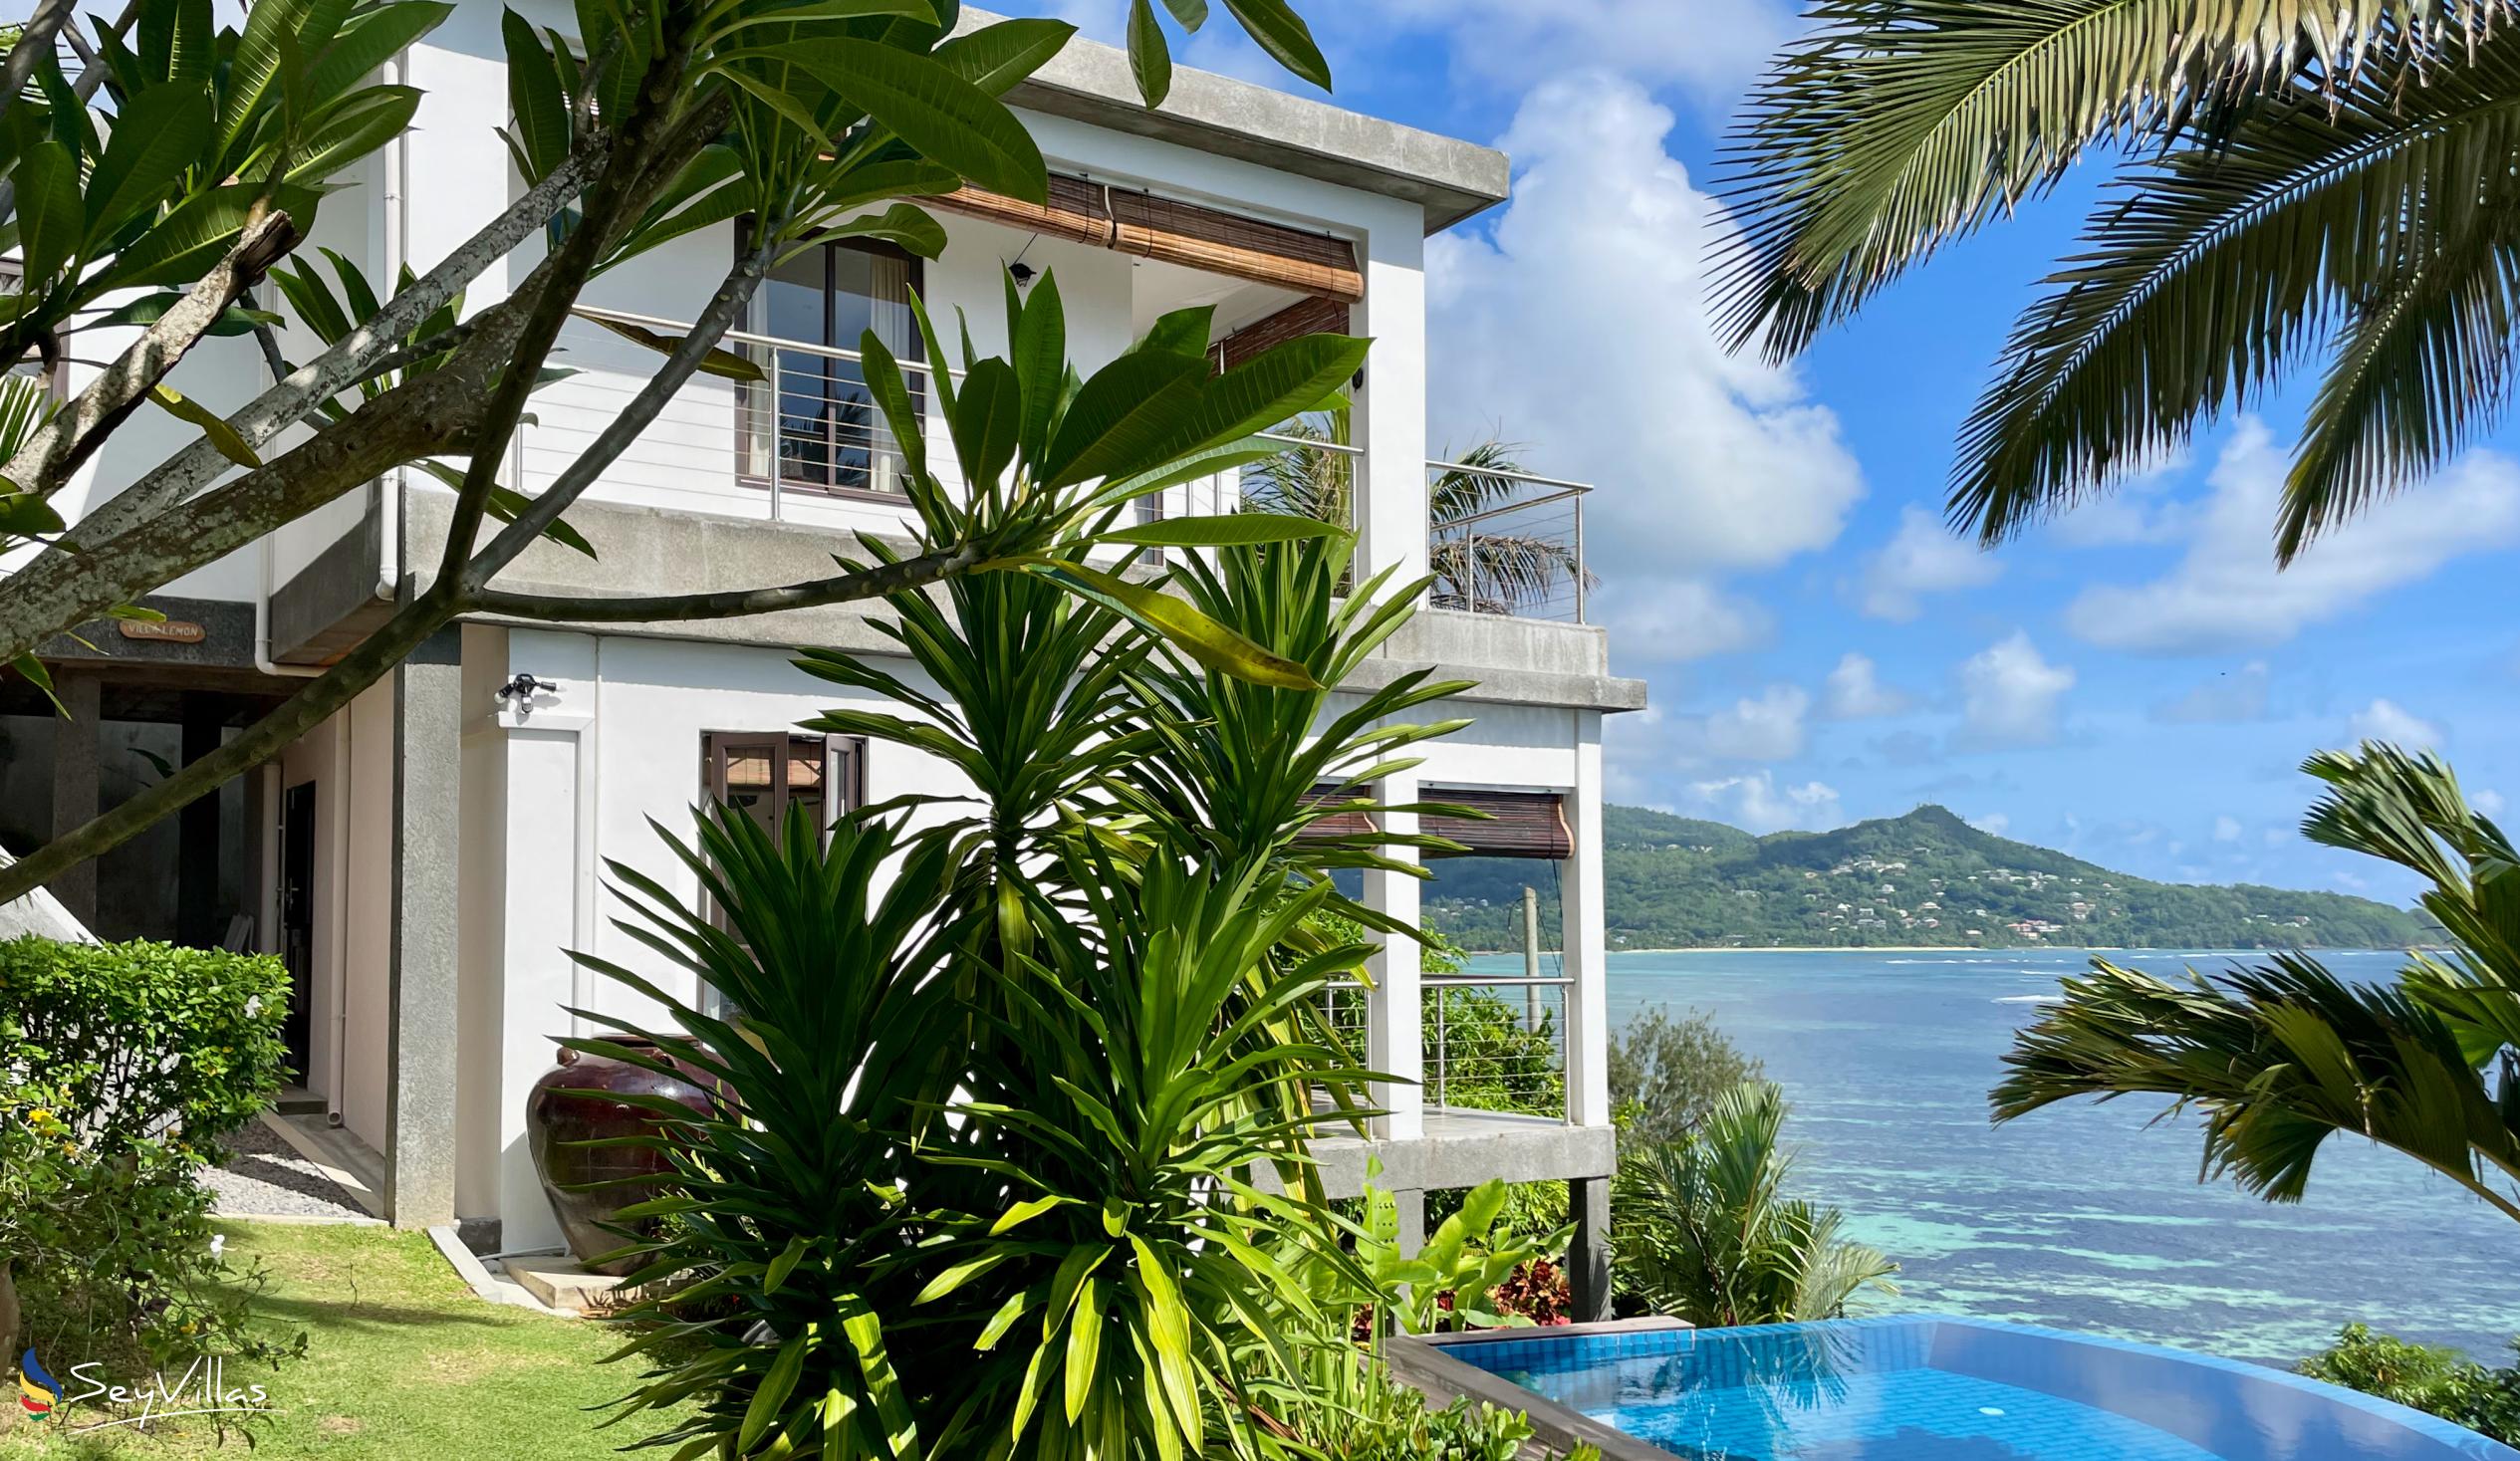 Foto 127: Chalets Bougainville - Appartamento Piano Superiore Villa Lemon - Mahé (Seychelles)